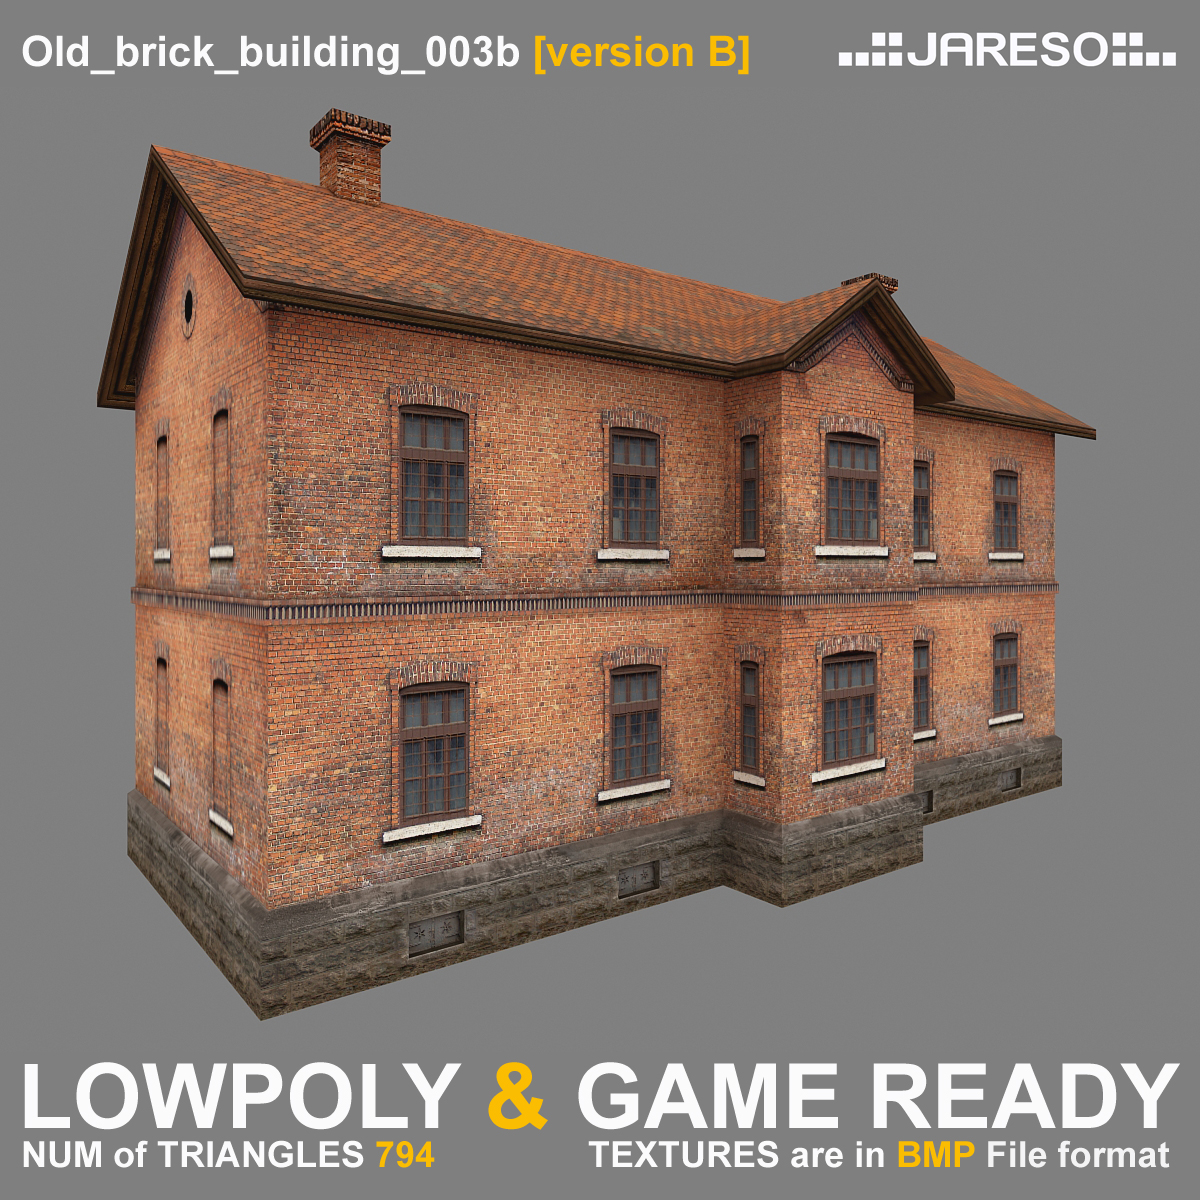 lowpoly老砖瓦房 - 老砖建筑物003b3d模型